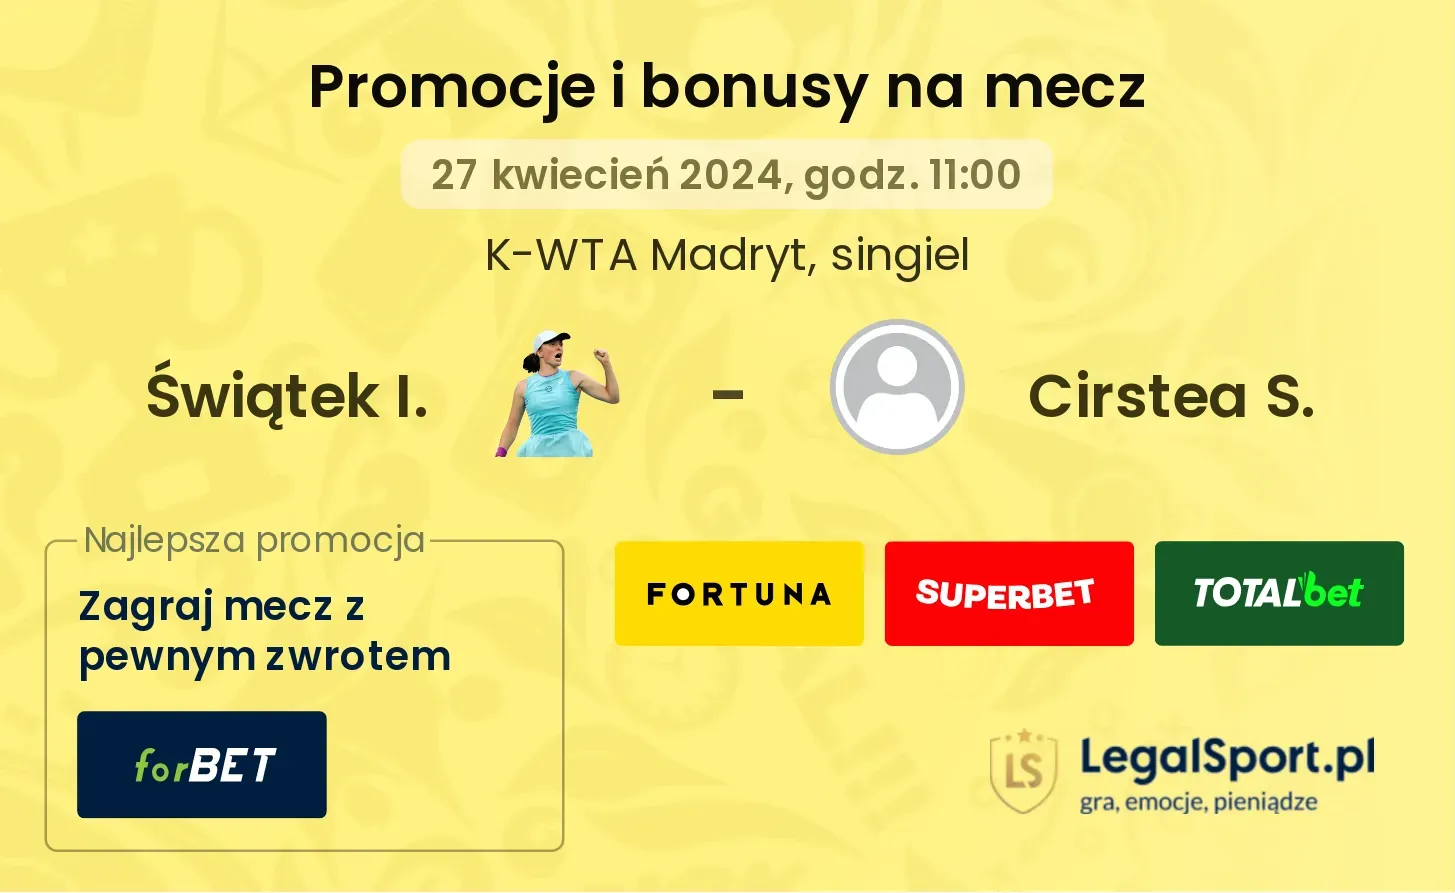 Świątek I. - Cirstea S. bonusy i promocje (27.04, 11:00)